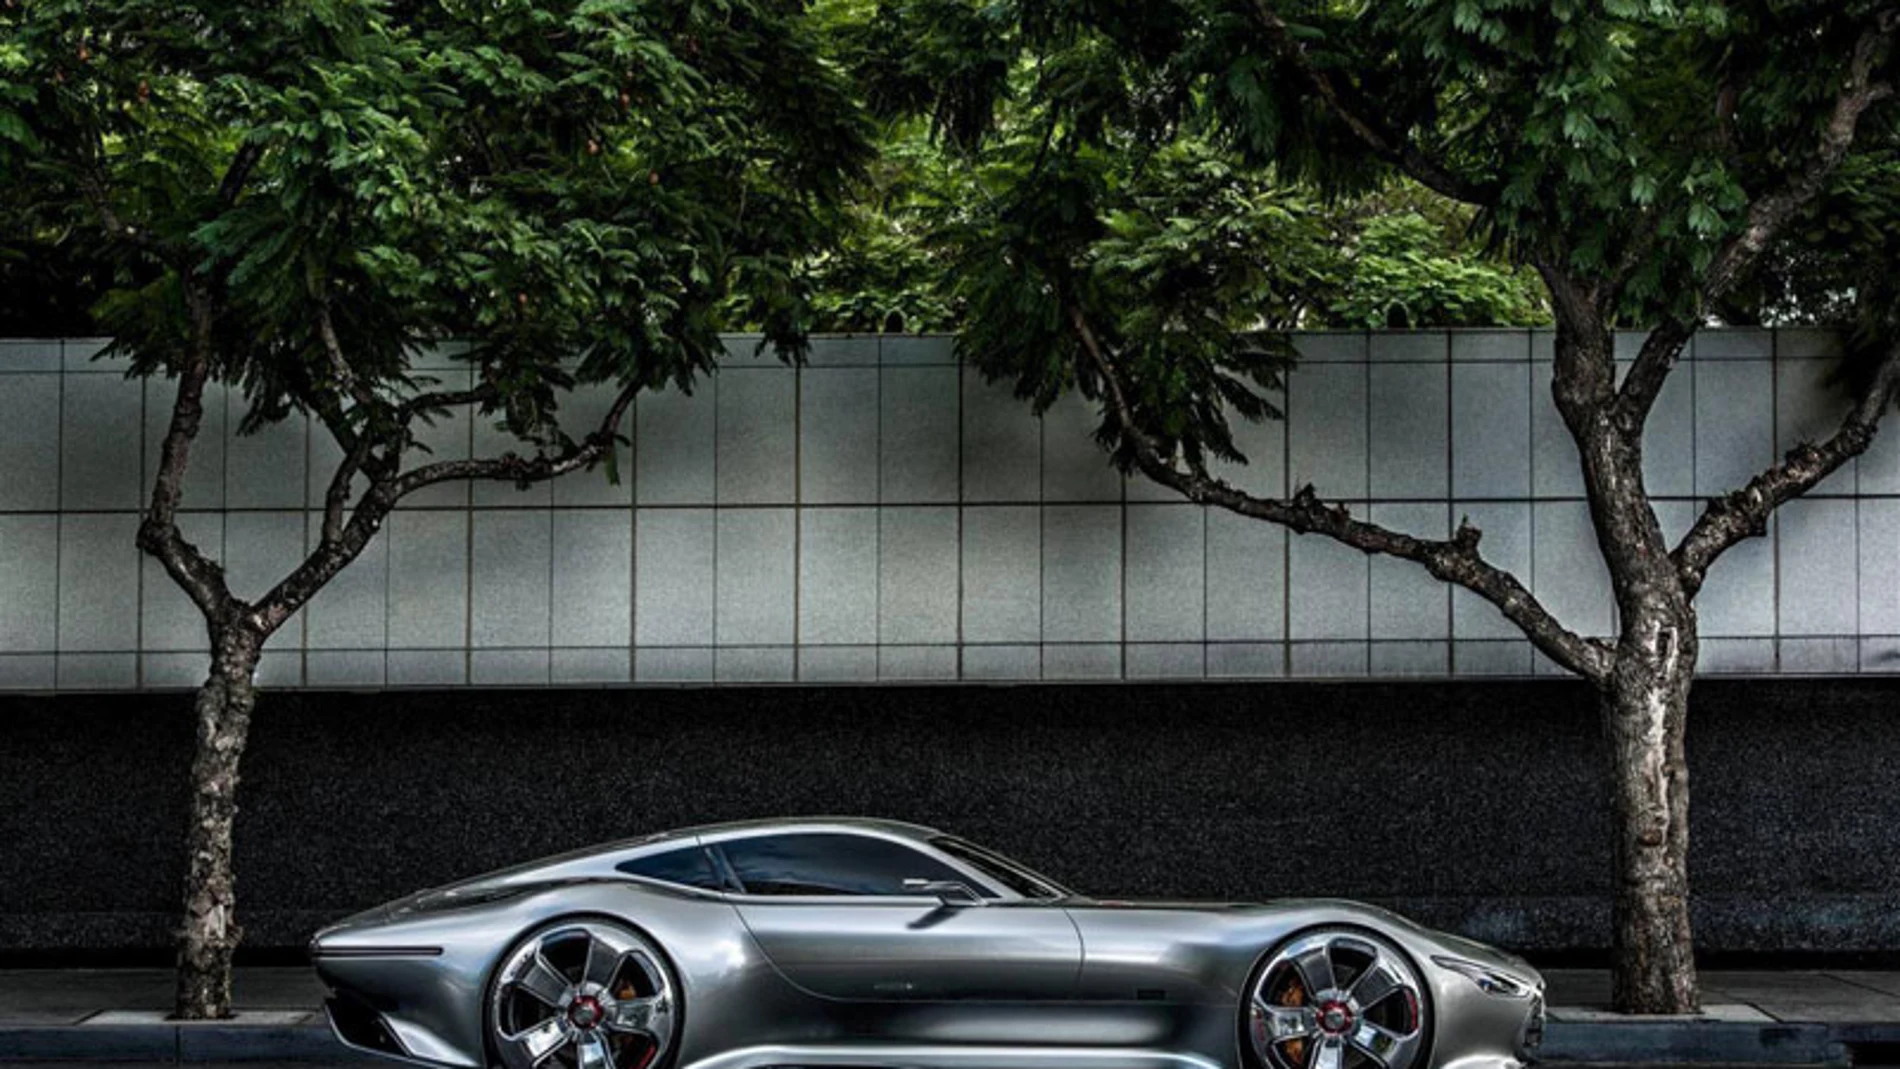 Mercedes AMG Vision Gran Turismo, un superdeportivo de videojuego